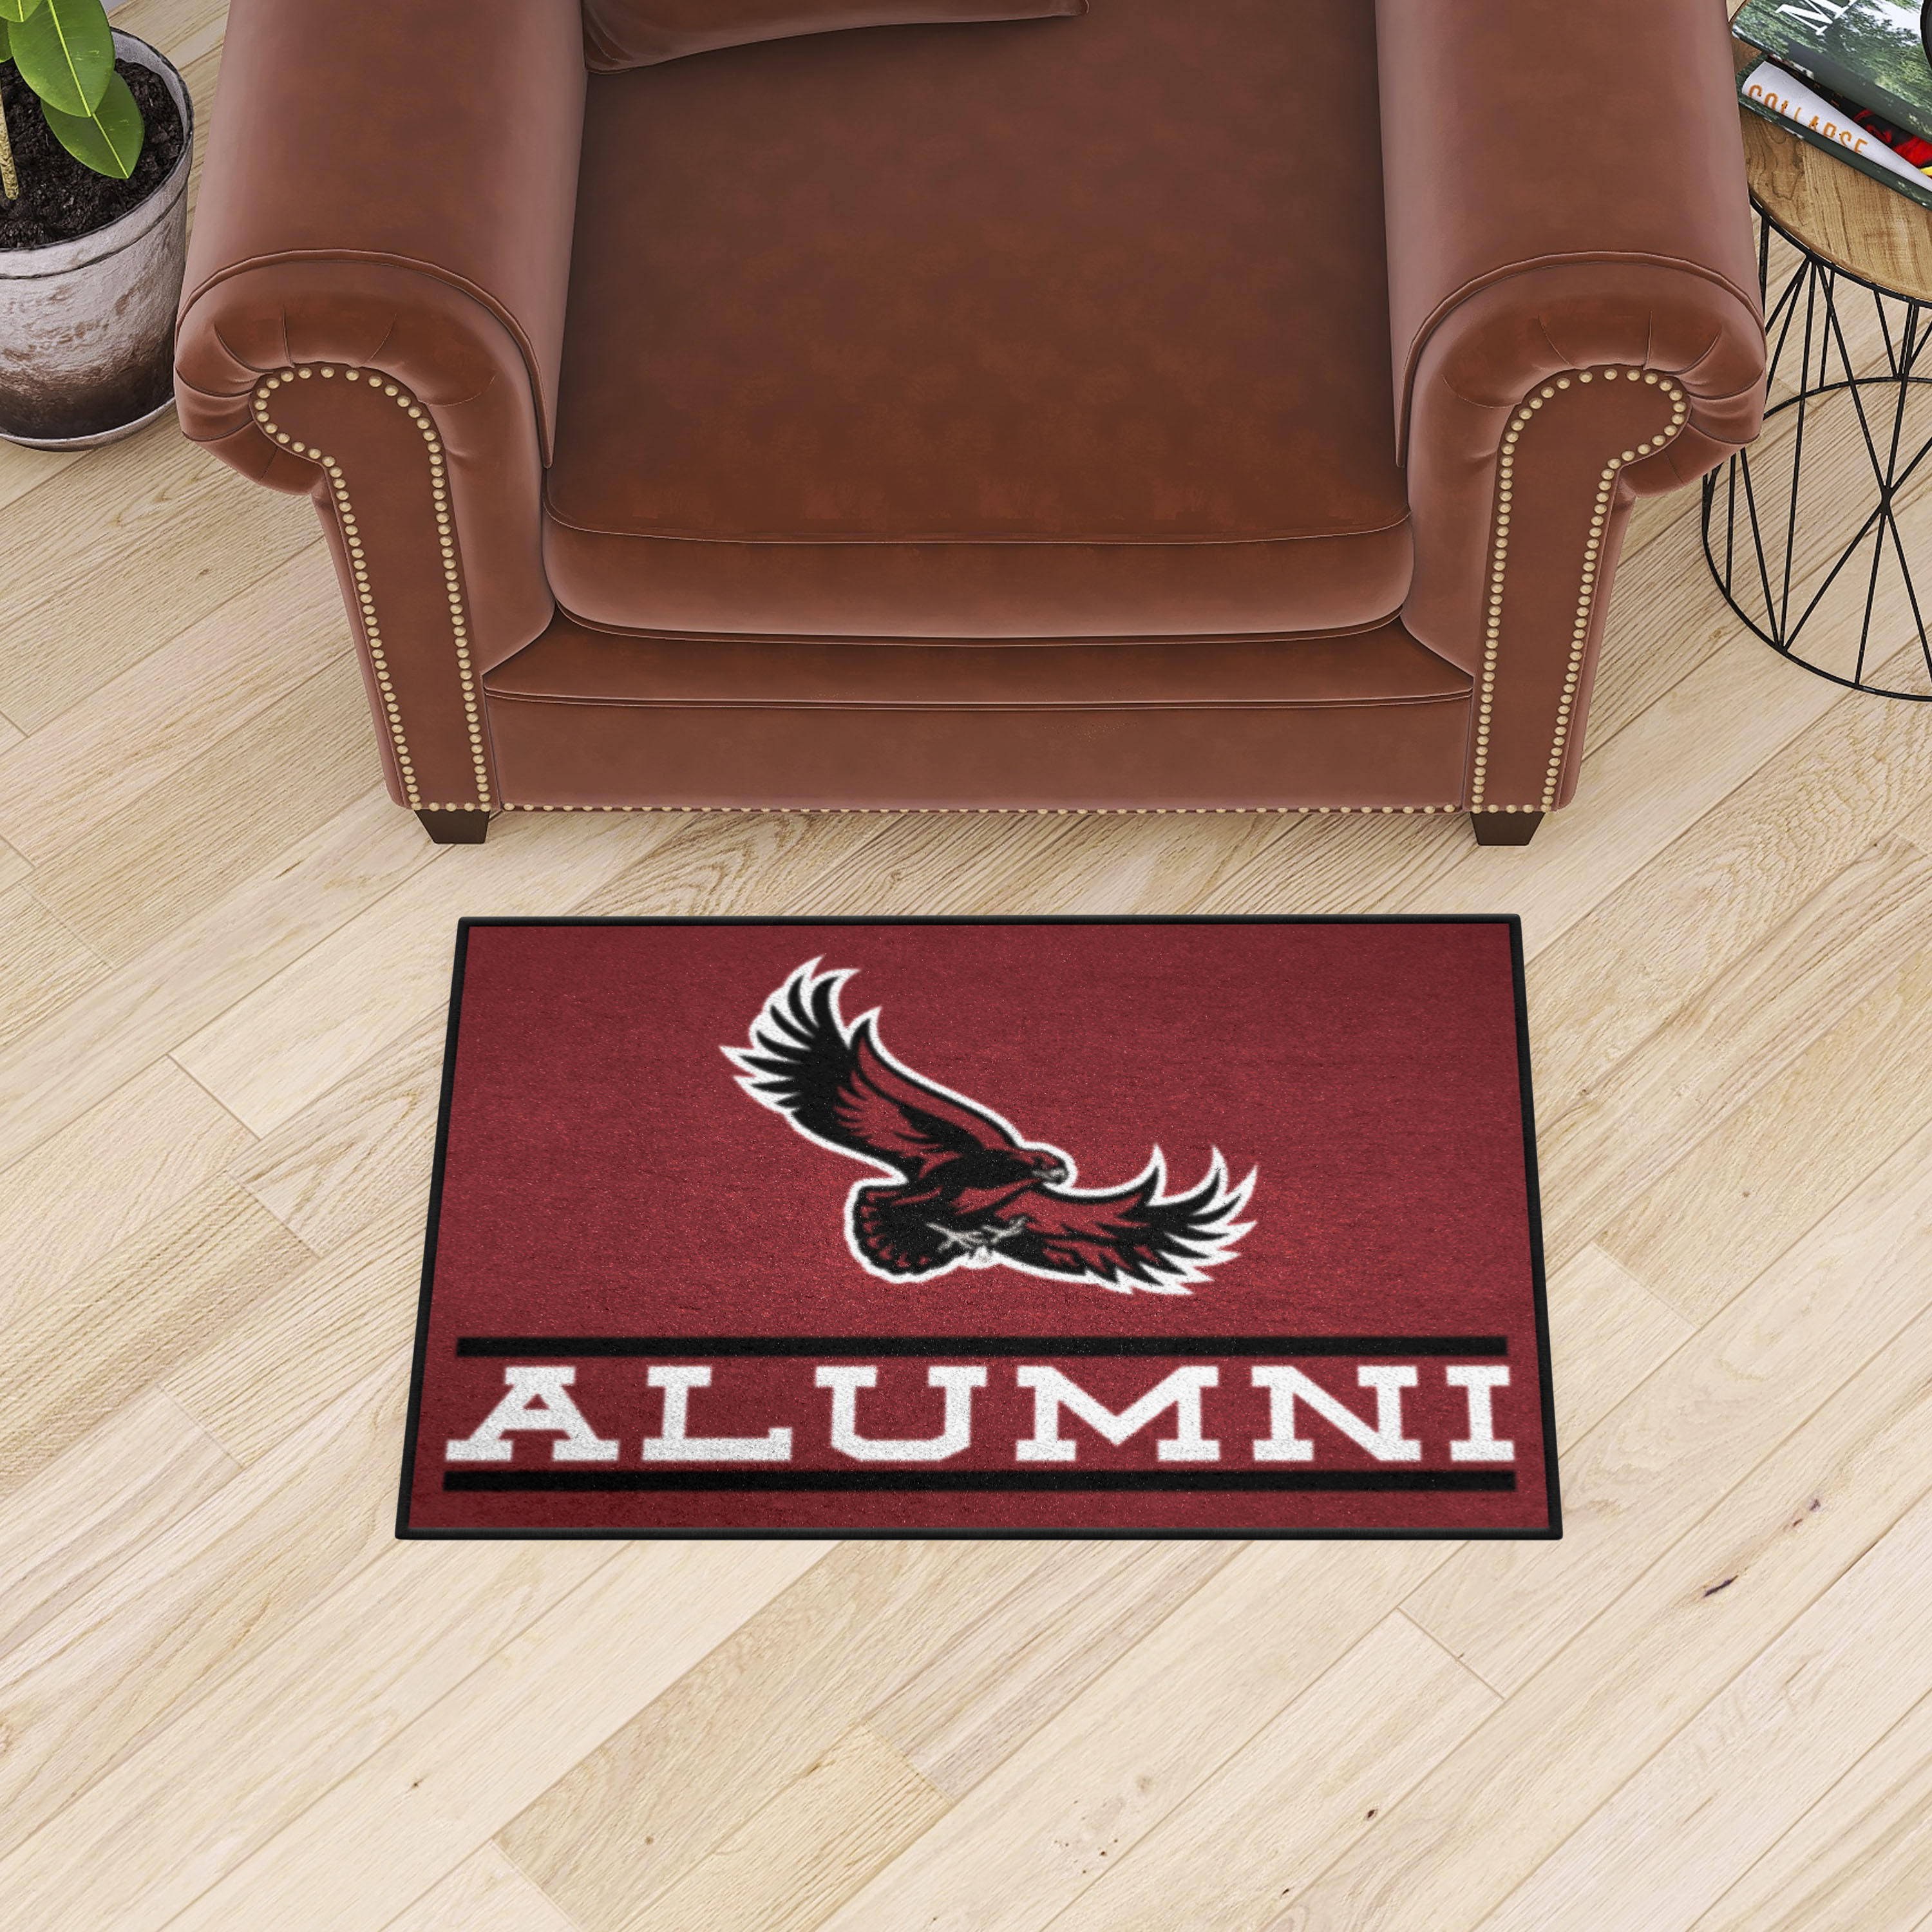 St. Joseph's Red Storm Alumni Starter Doormat - 19 x 30